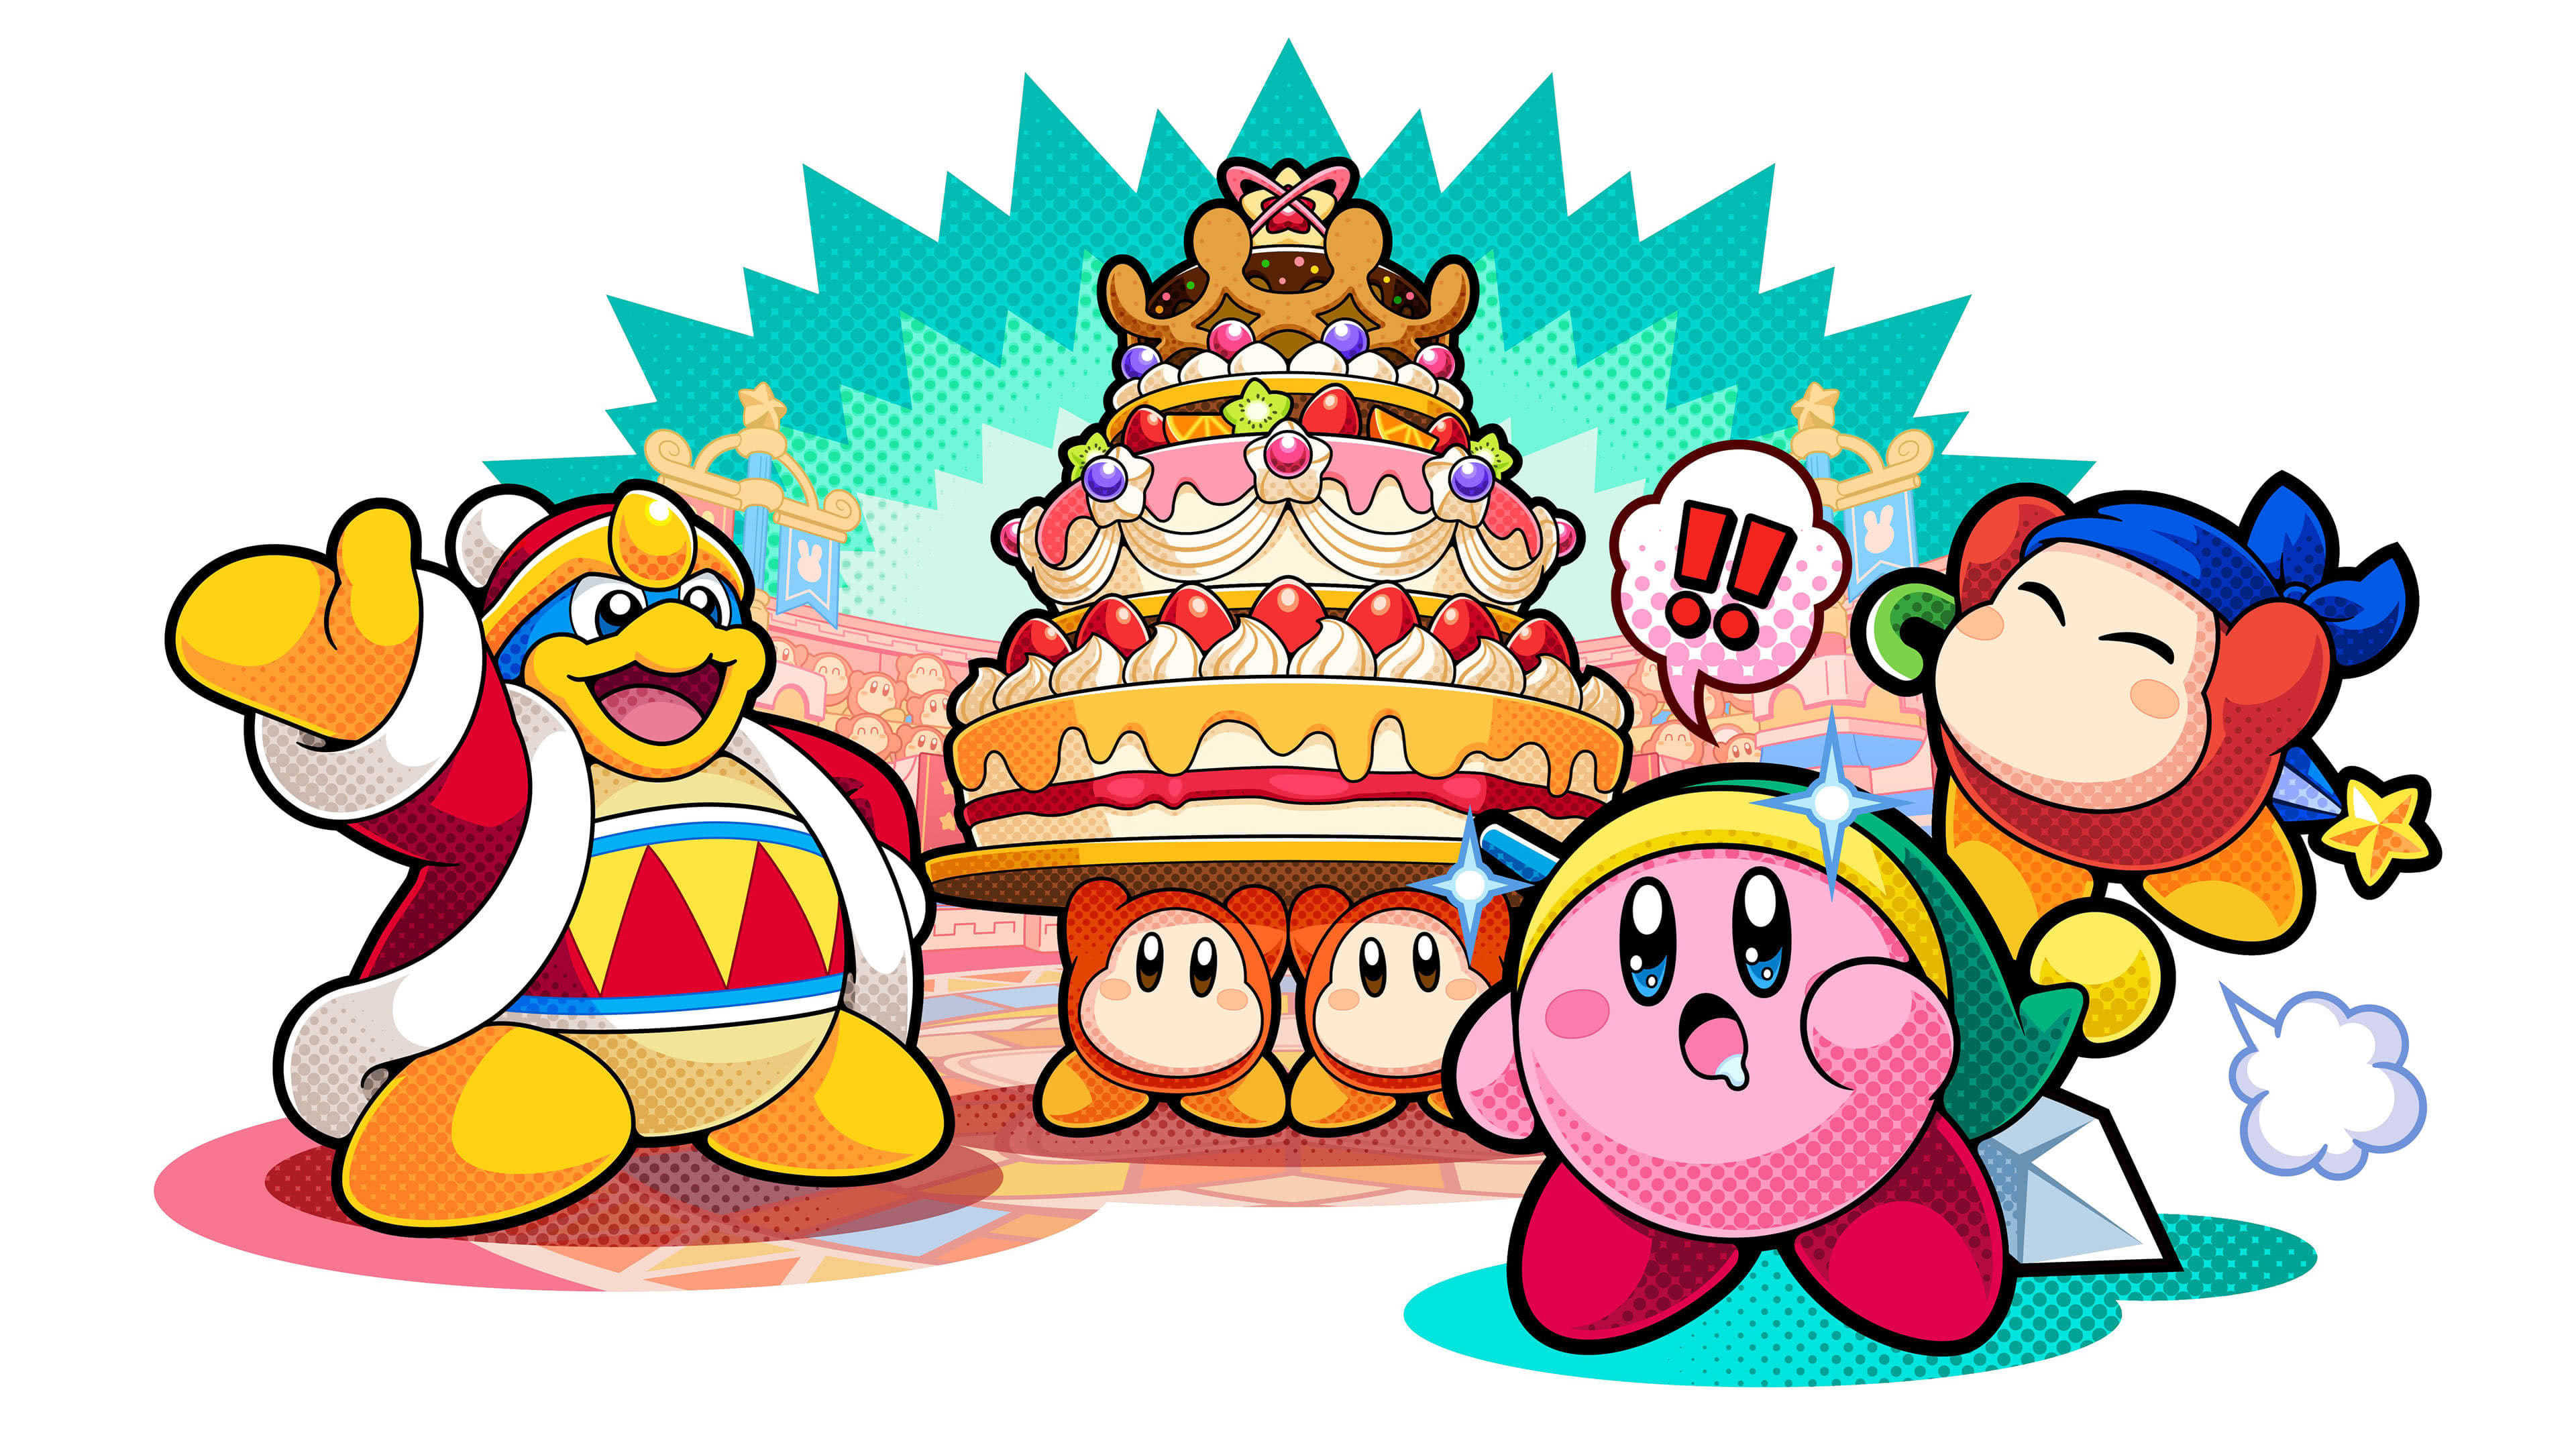 Bánh Kirby Battle Royale không chỉ là món ăn ngon mà còn là một nguồn cảm hứng tuyệt vời cho những người yêu thích Kirby. Hãy thử sử dụng bức hình nền UHD 4K với chiếc bánh đầy màu sắc này để biến màn hình của bạn thành một thế giới Kirby đầy sáng tạo. Pixelz sẽ là một lựa chọn tuyệt vời cho bạn để khám phá các tùy chọn này.